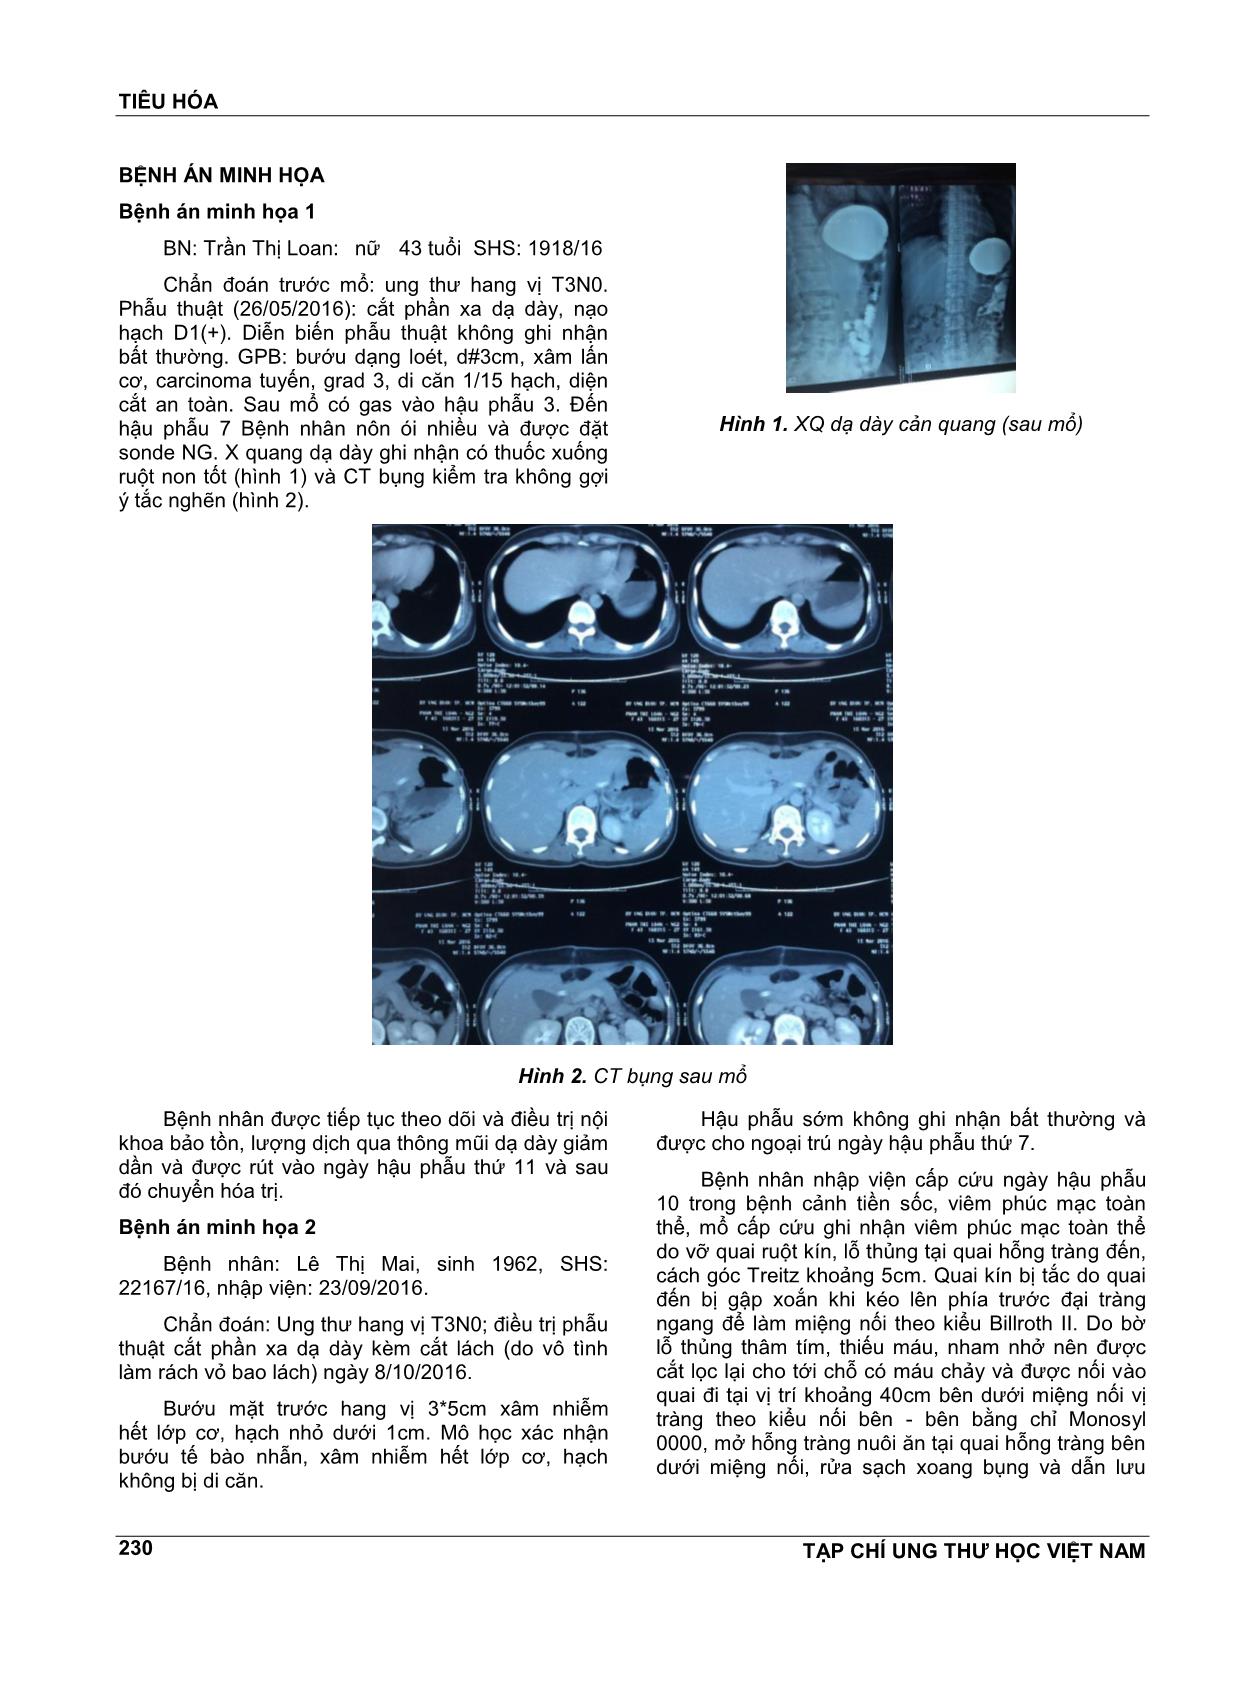 Biến chứng sớm sau phẫu thuật cắt phần xa dạ dày nối billroth II trang 2